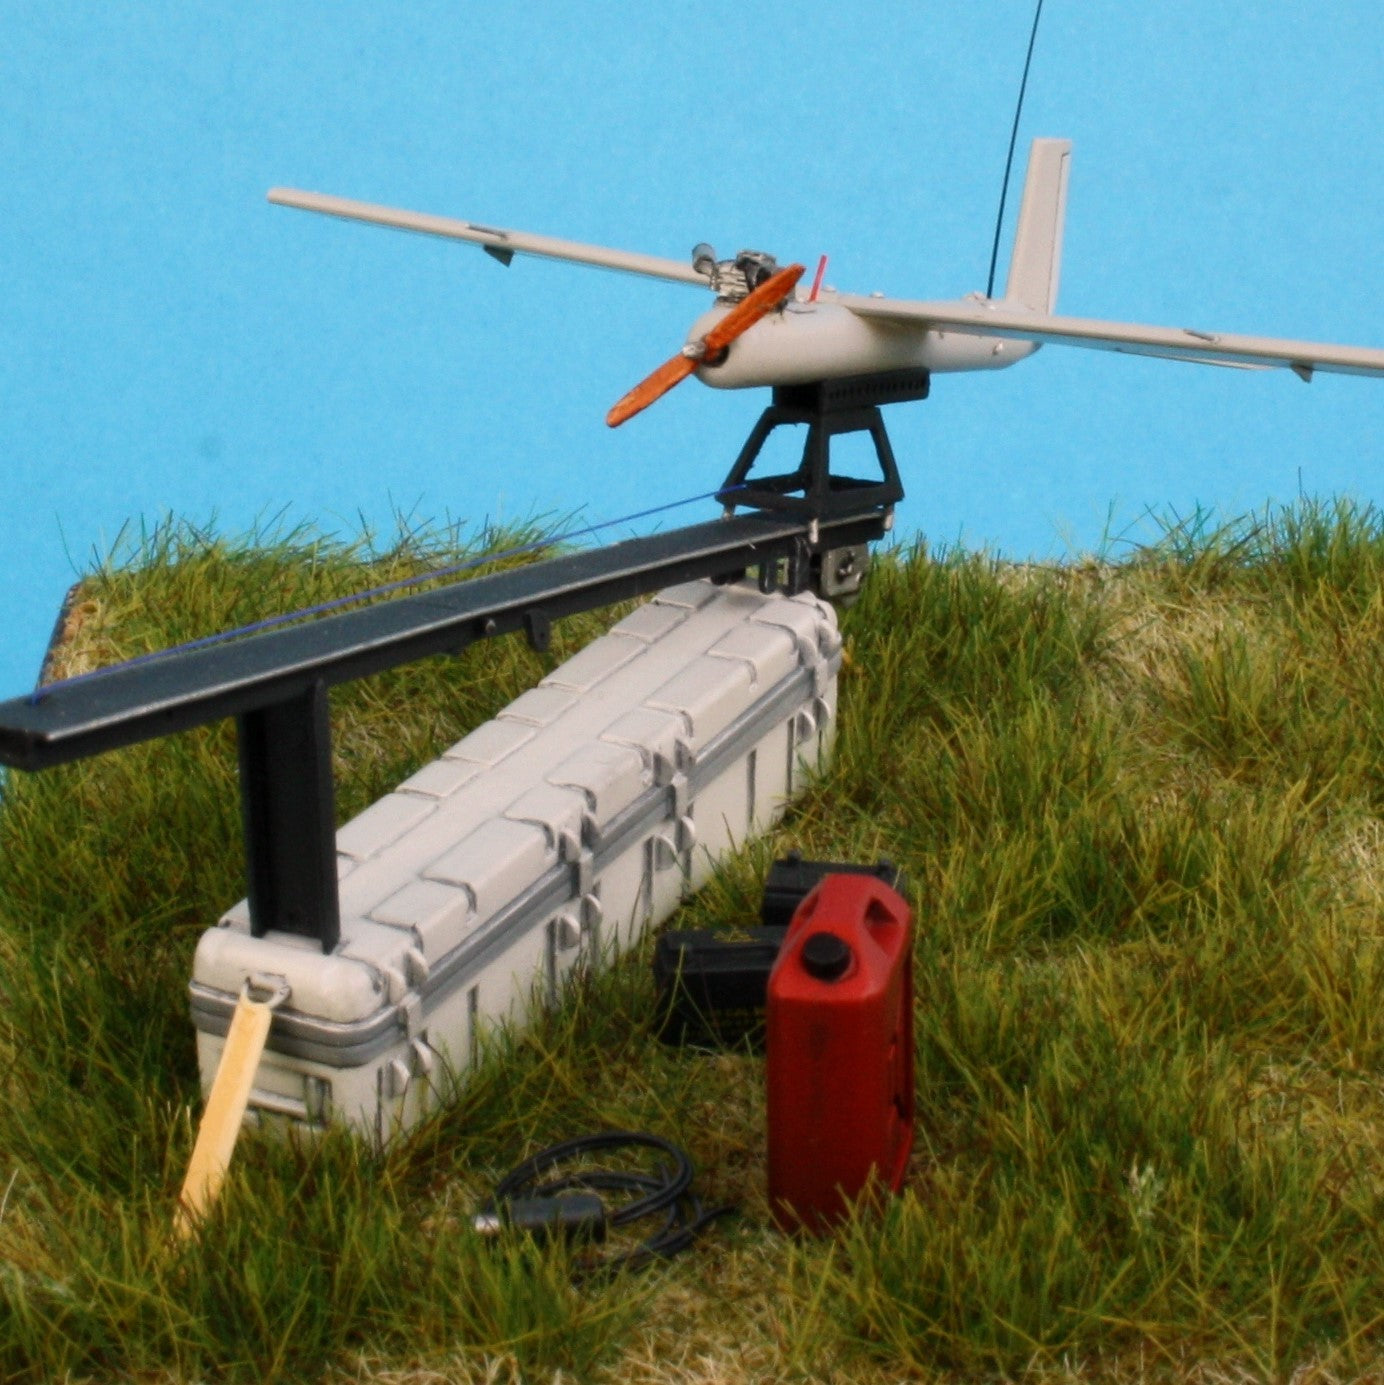 Silver Fox UAV Model and Accessories - 1/35